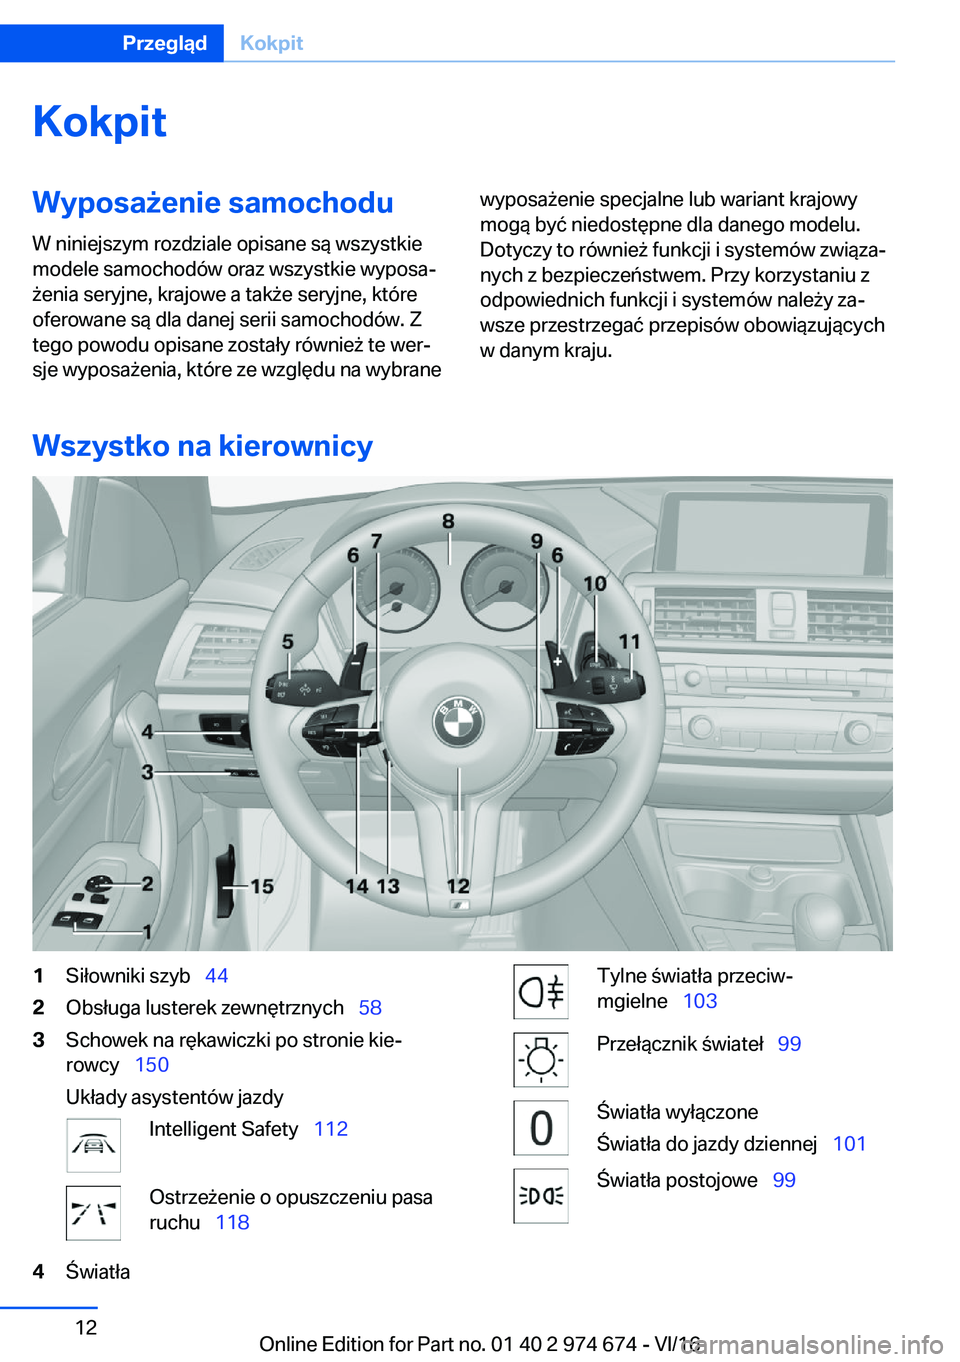 BMW M2 2017  Instrukcja obsługi (in Polish) �K�o�k�p�i�t�W�y�p�o�s�a9�e�n�i�e��s�a�m�o�c�h�o�d�u�W� �n�i�n�i�e�j�s�z�y�m� �r�o�z�d�z�i�a�l�e� �o�p�i�s�a�n�e� �s�